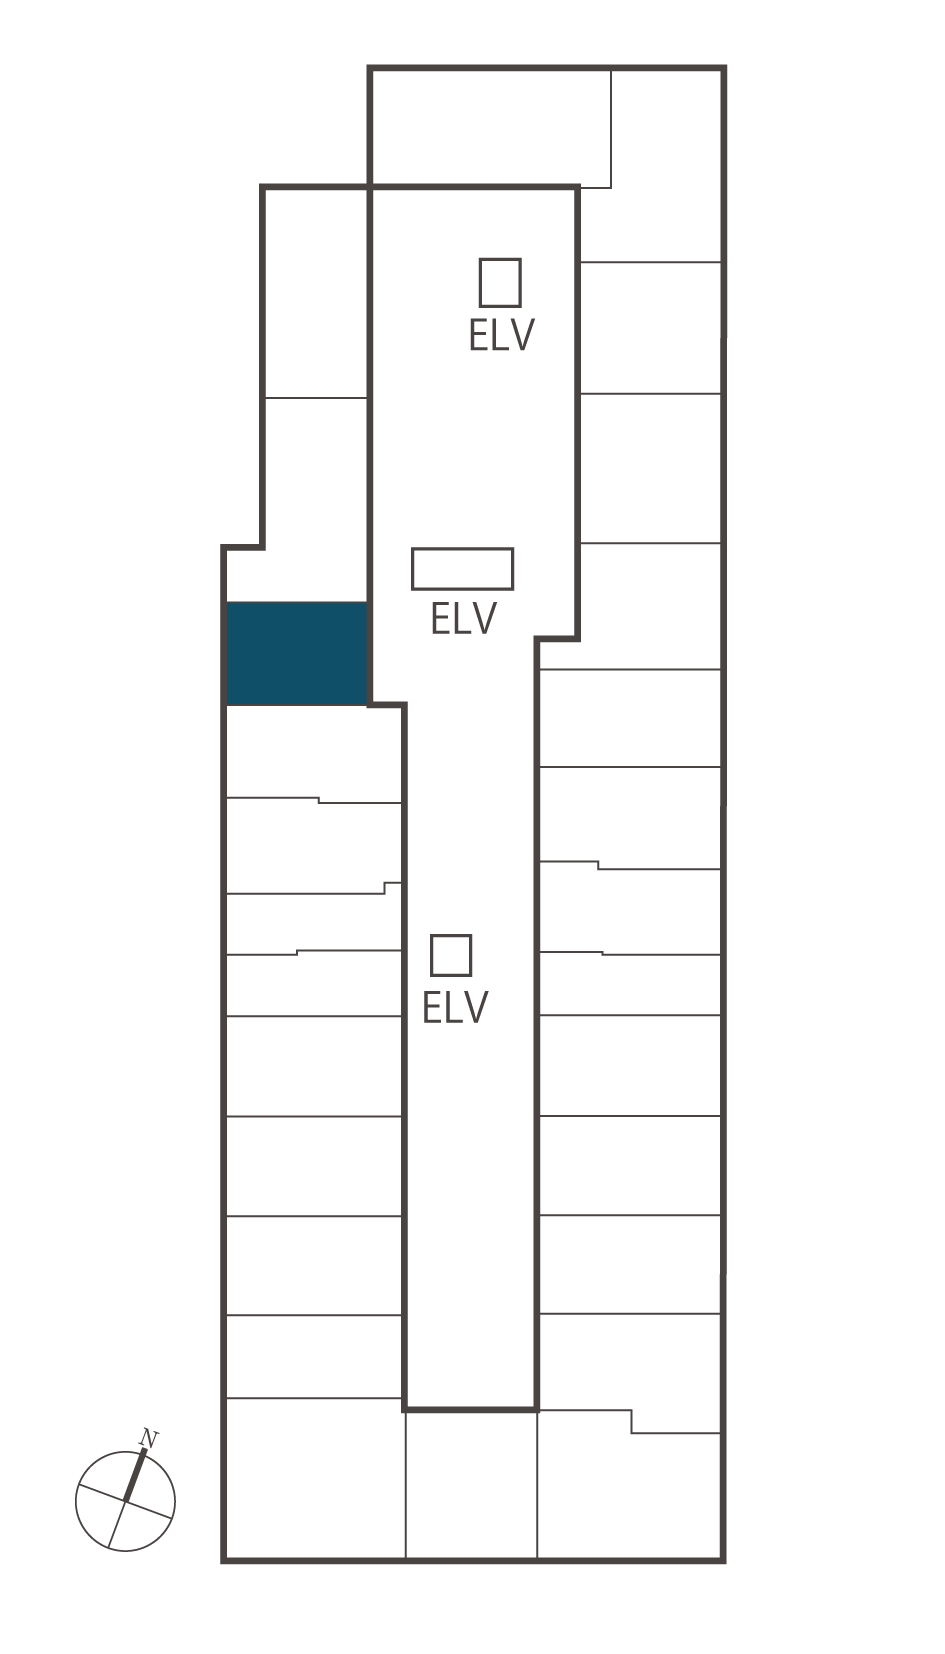 54W住戸位置概念図